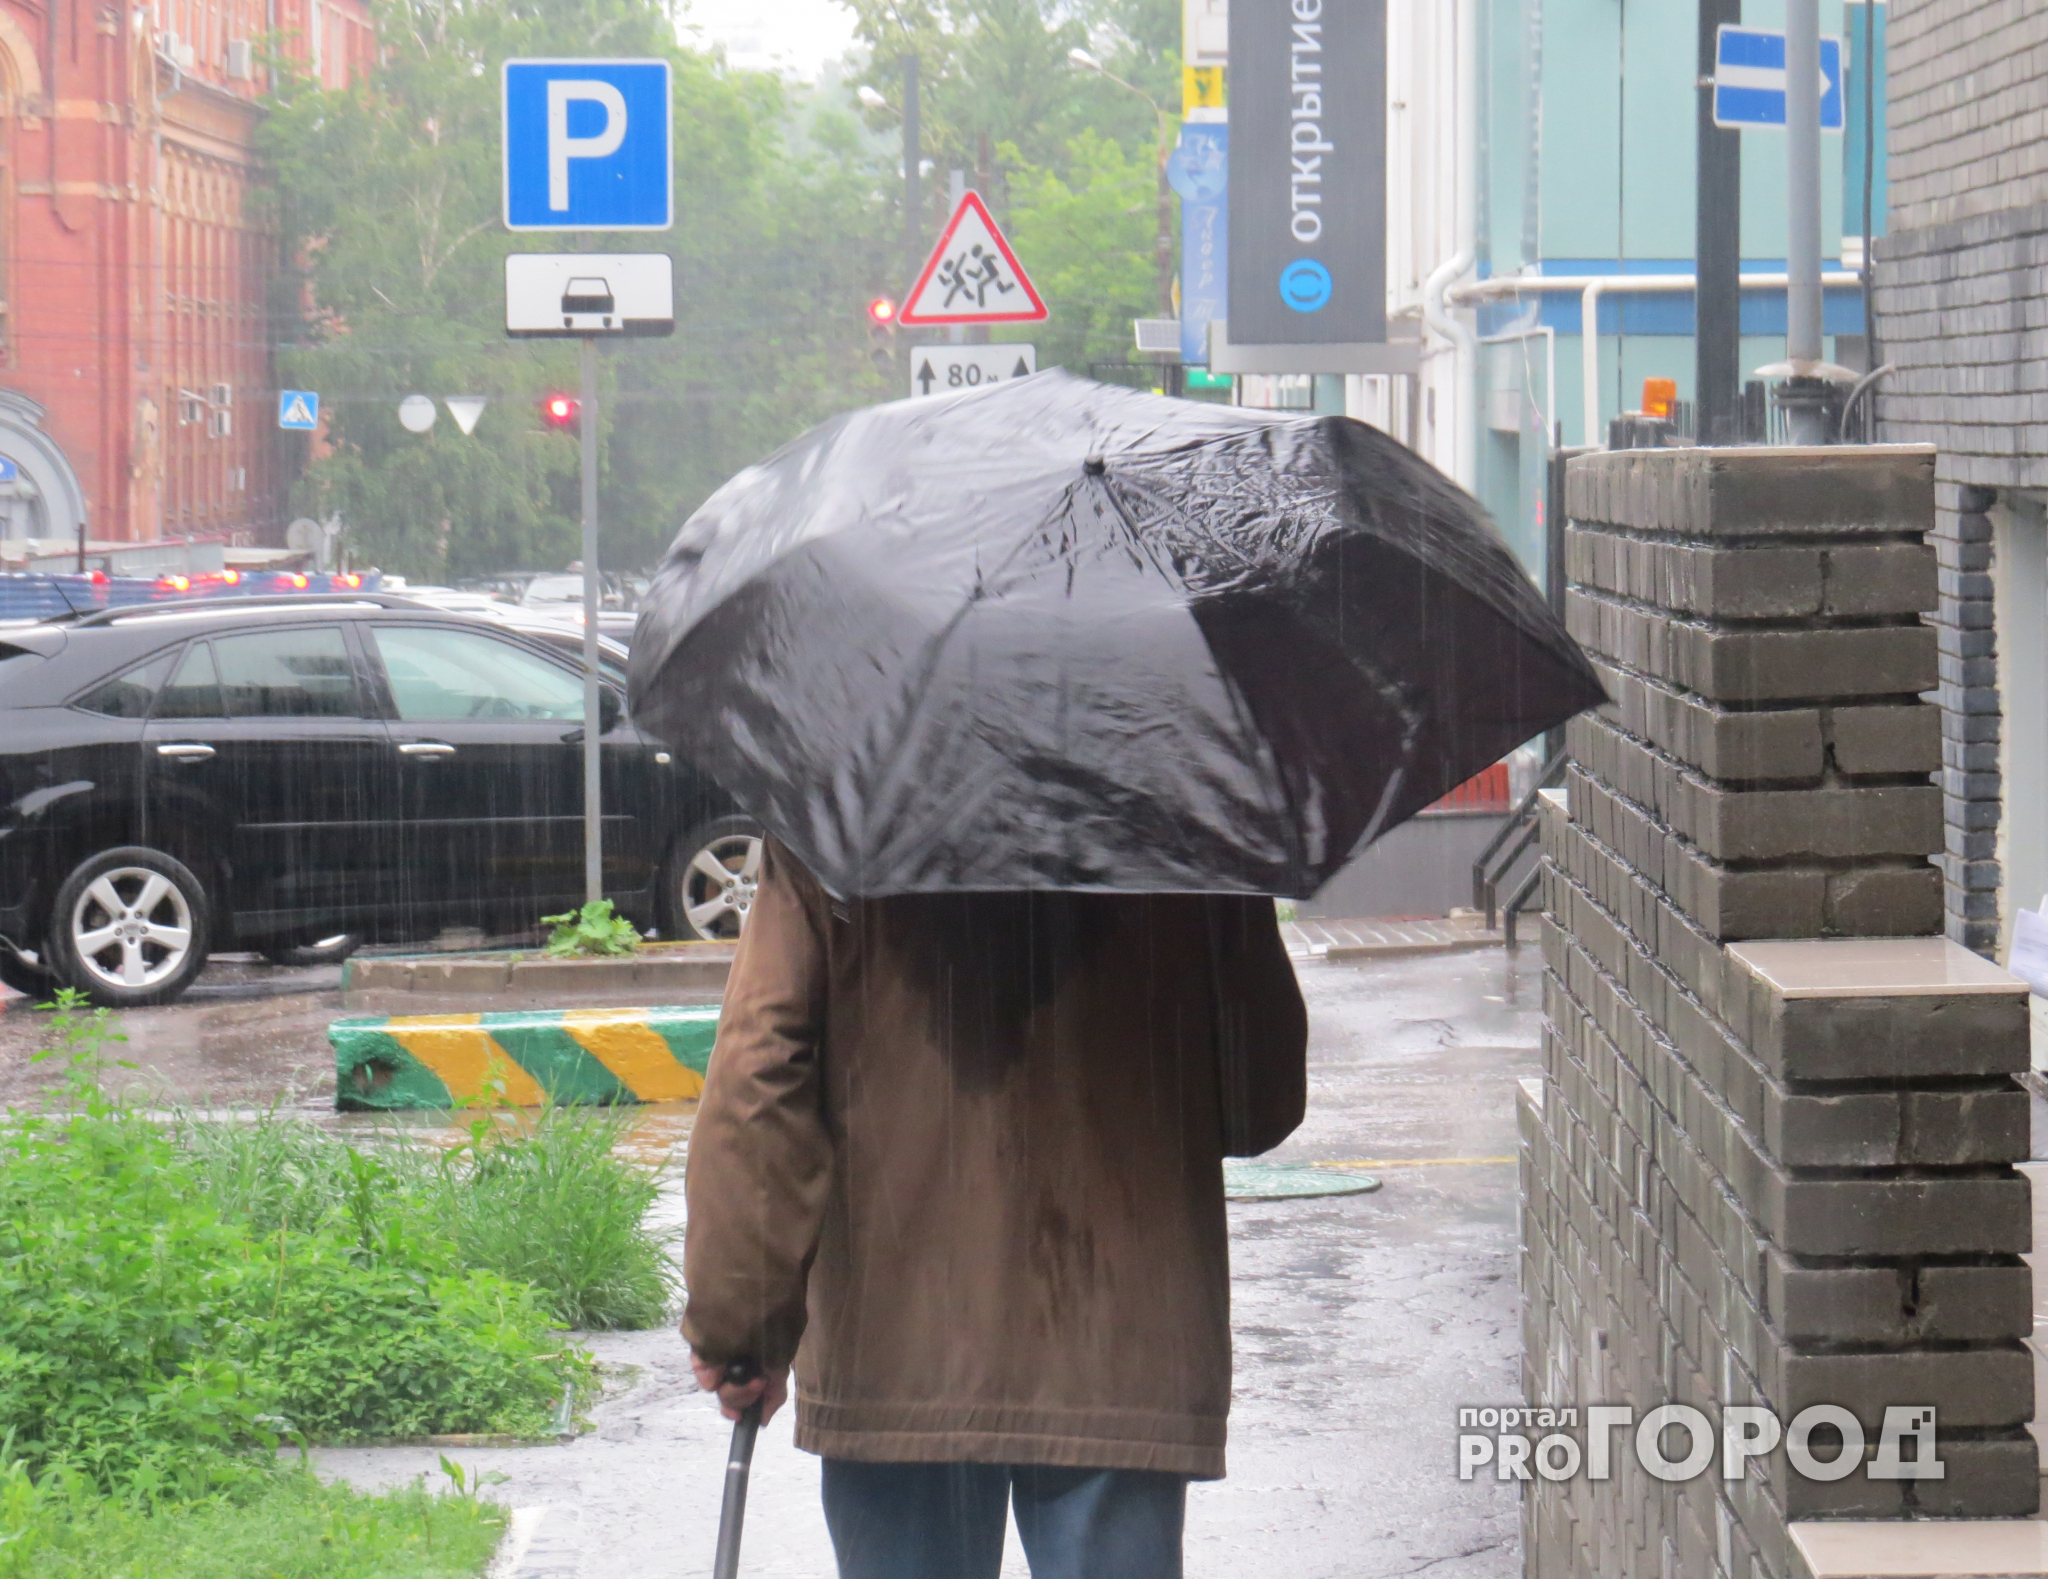 Прогноз синоптиков - в пятницу в Рязани ожидается небольшой дождь